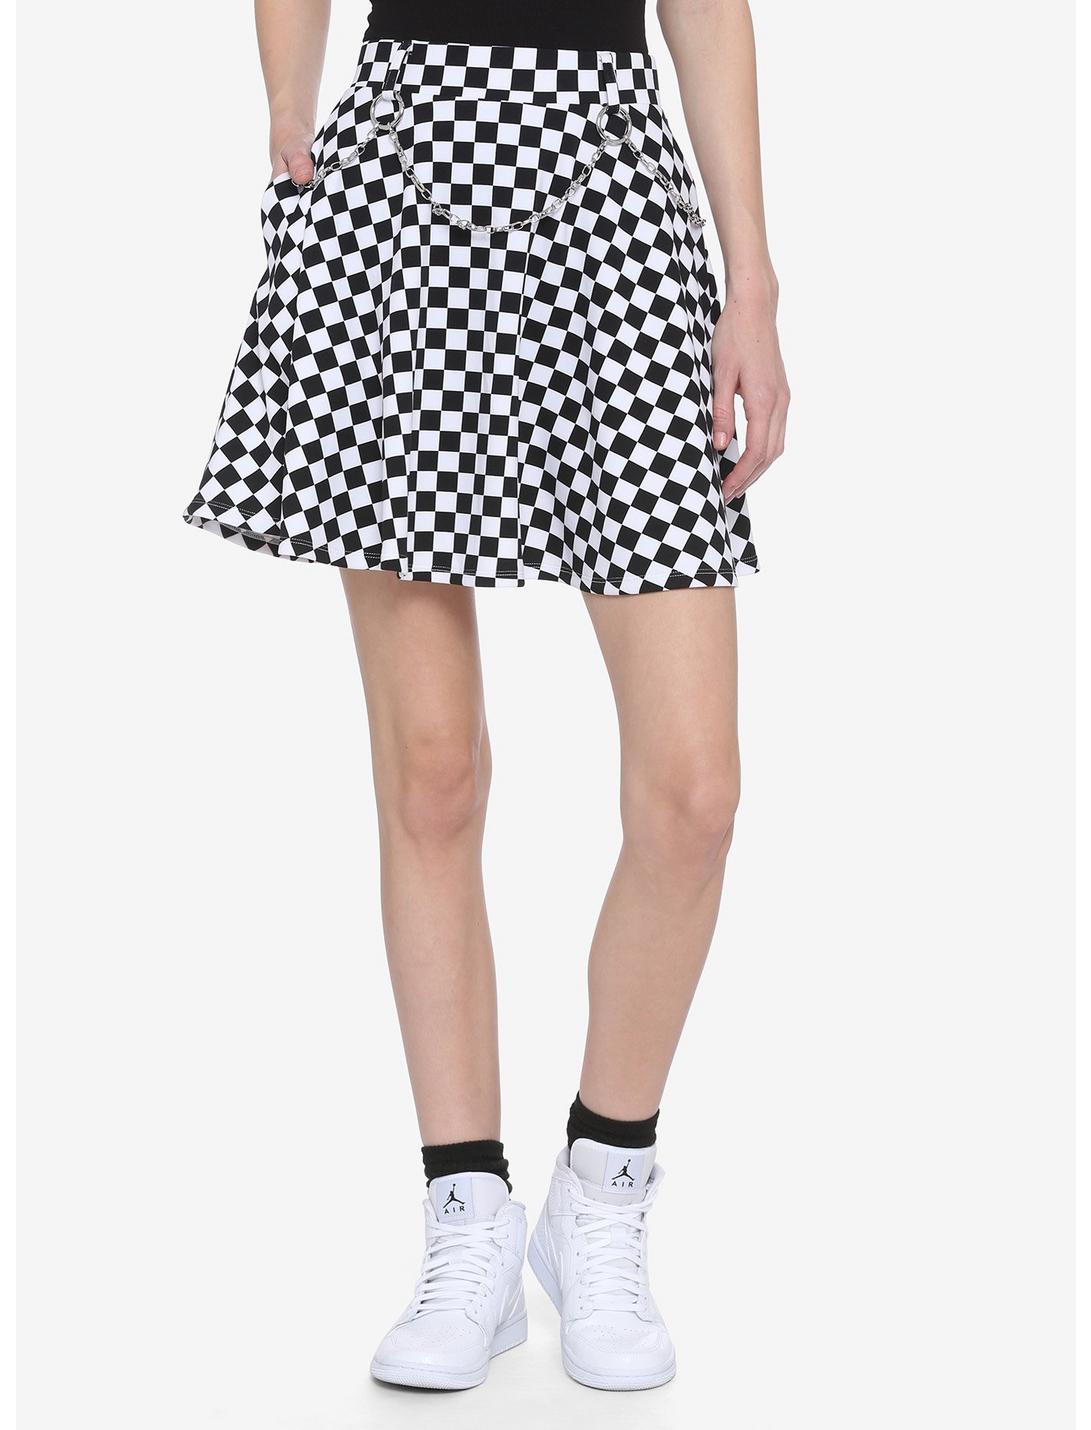 Black & White Checkered Chains & Clips Skater Skirt, MULTI, hi-res